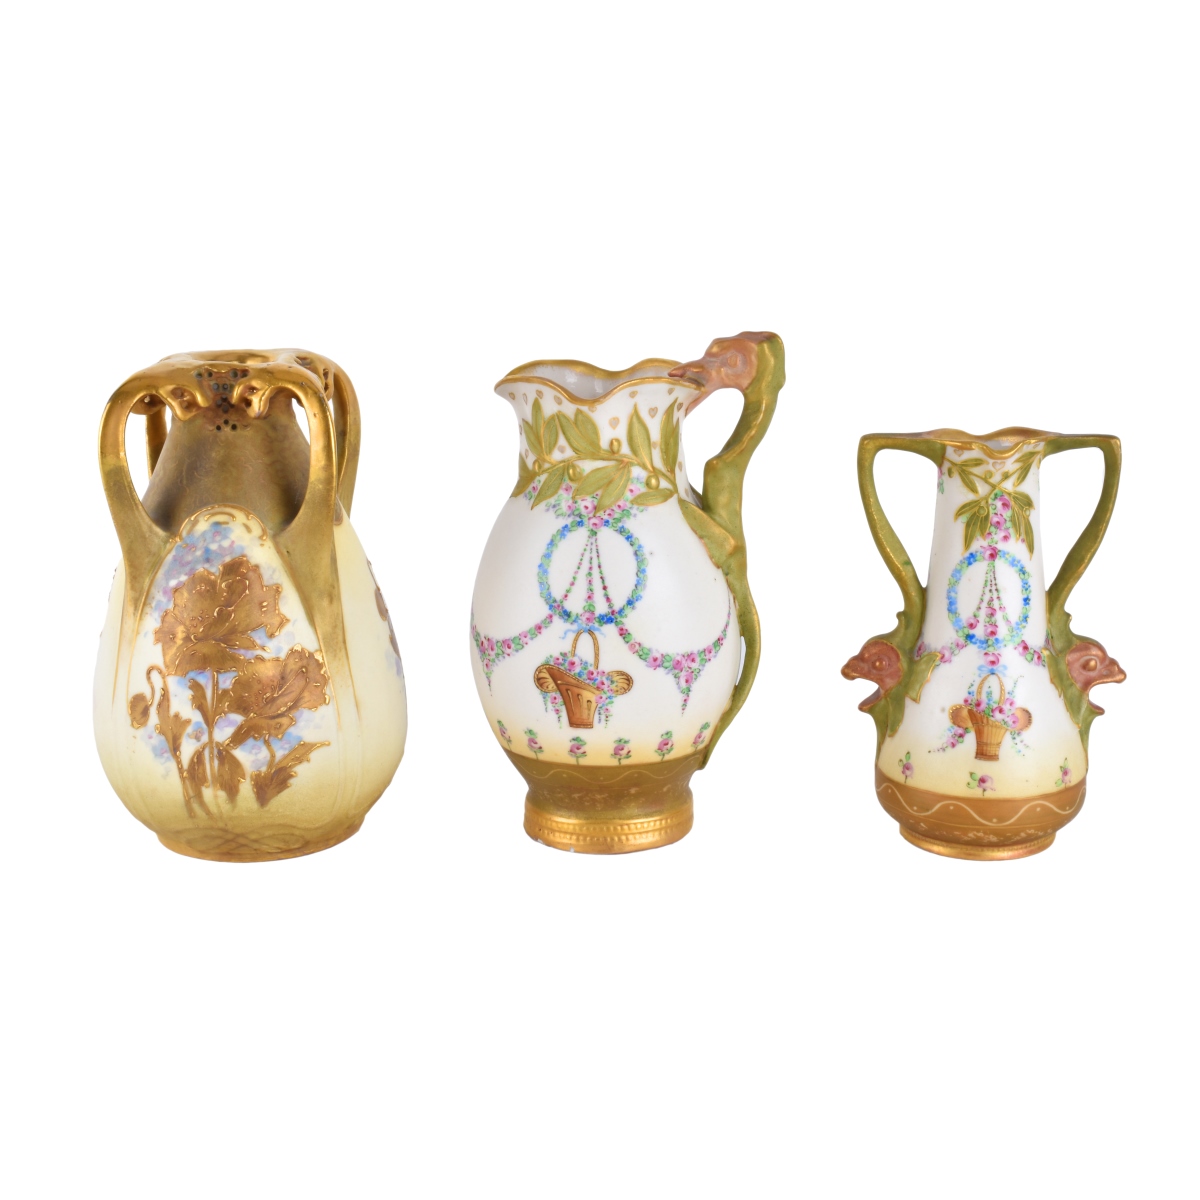 Three (3) Amphora Vases